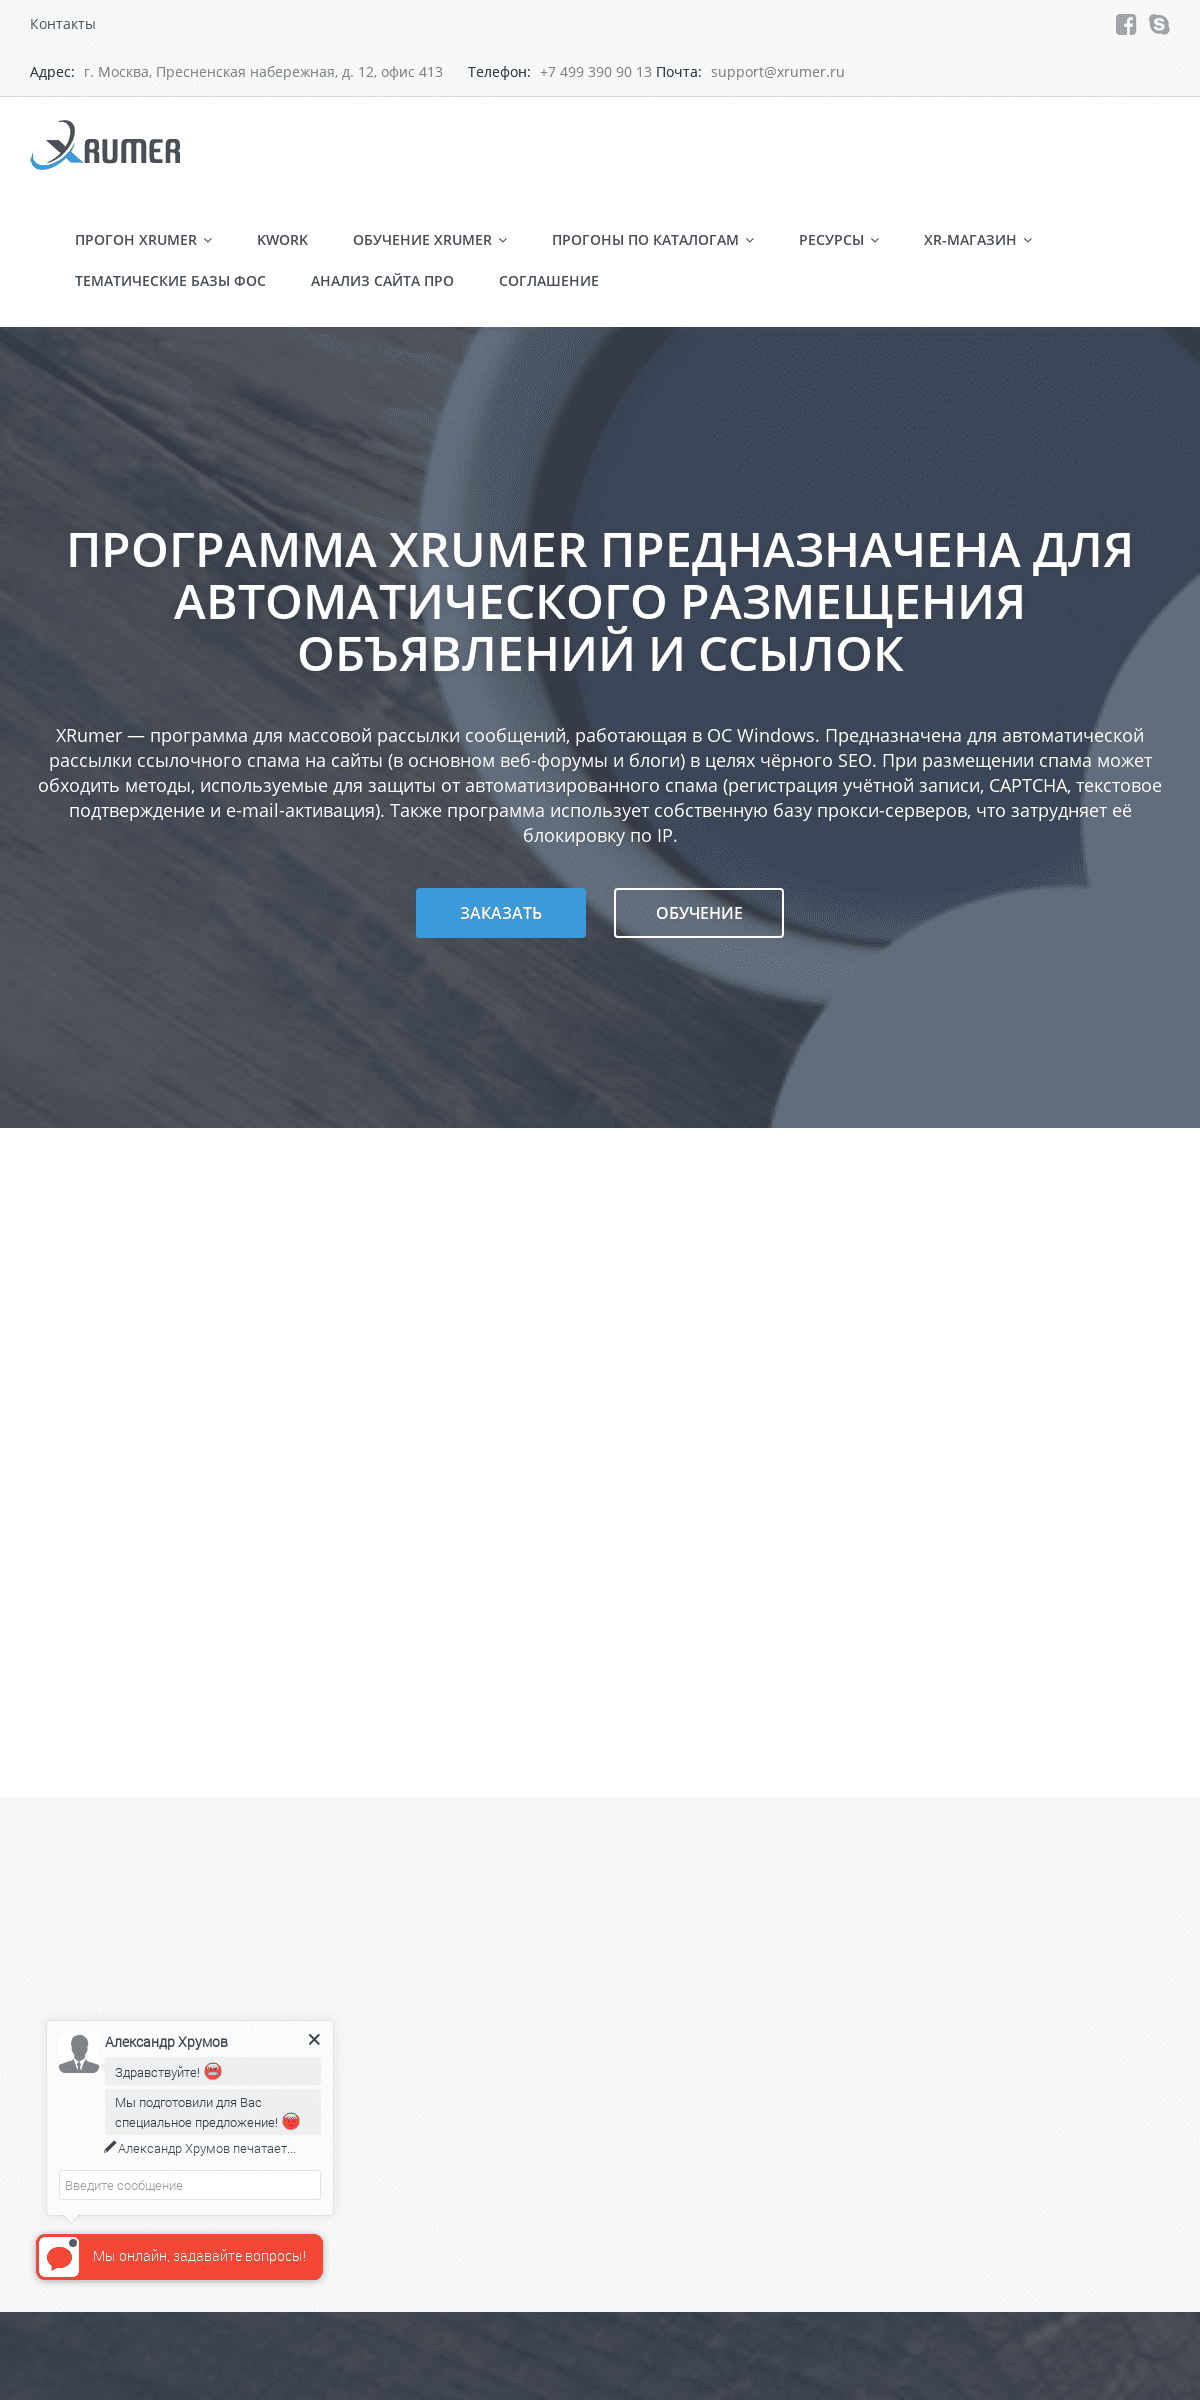 A complete backup of xrumer.ru